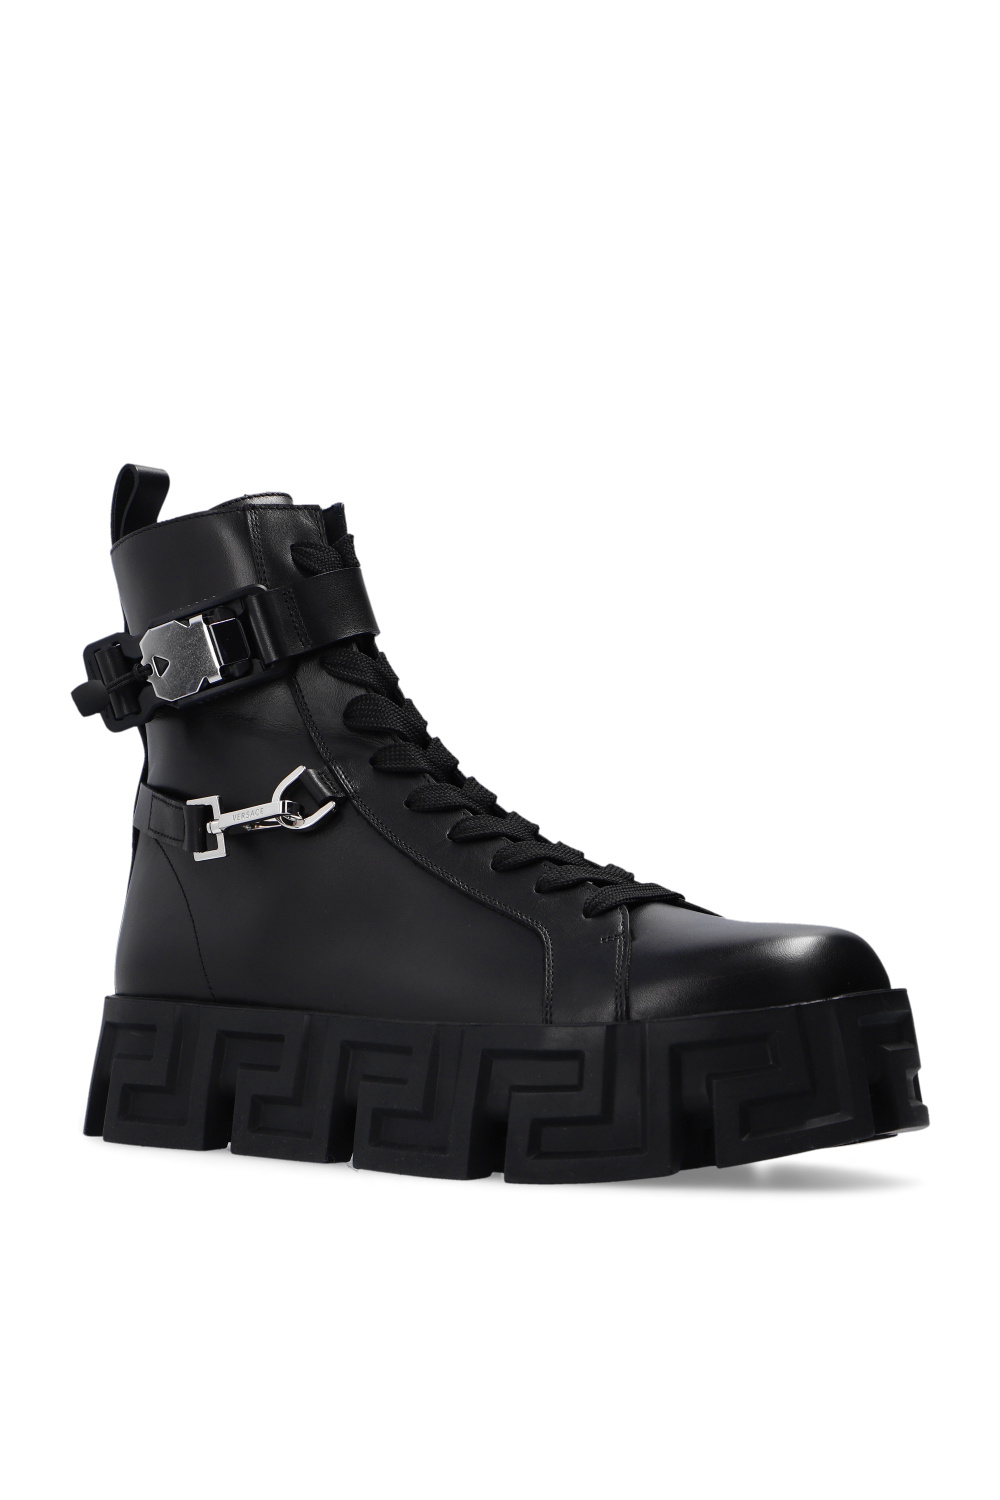 Versace La boutique Undefeated a créé une petite collection de sneakers pour Foot Locker